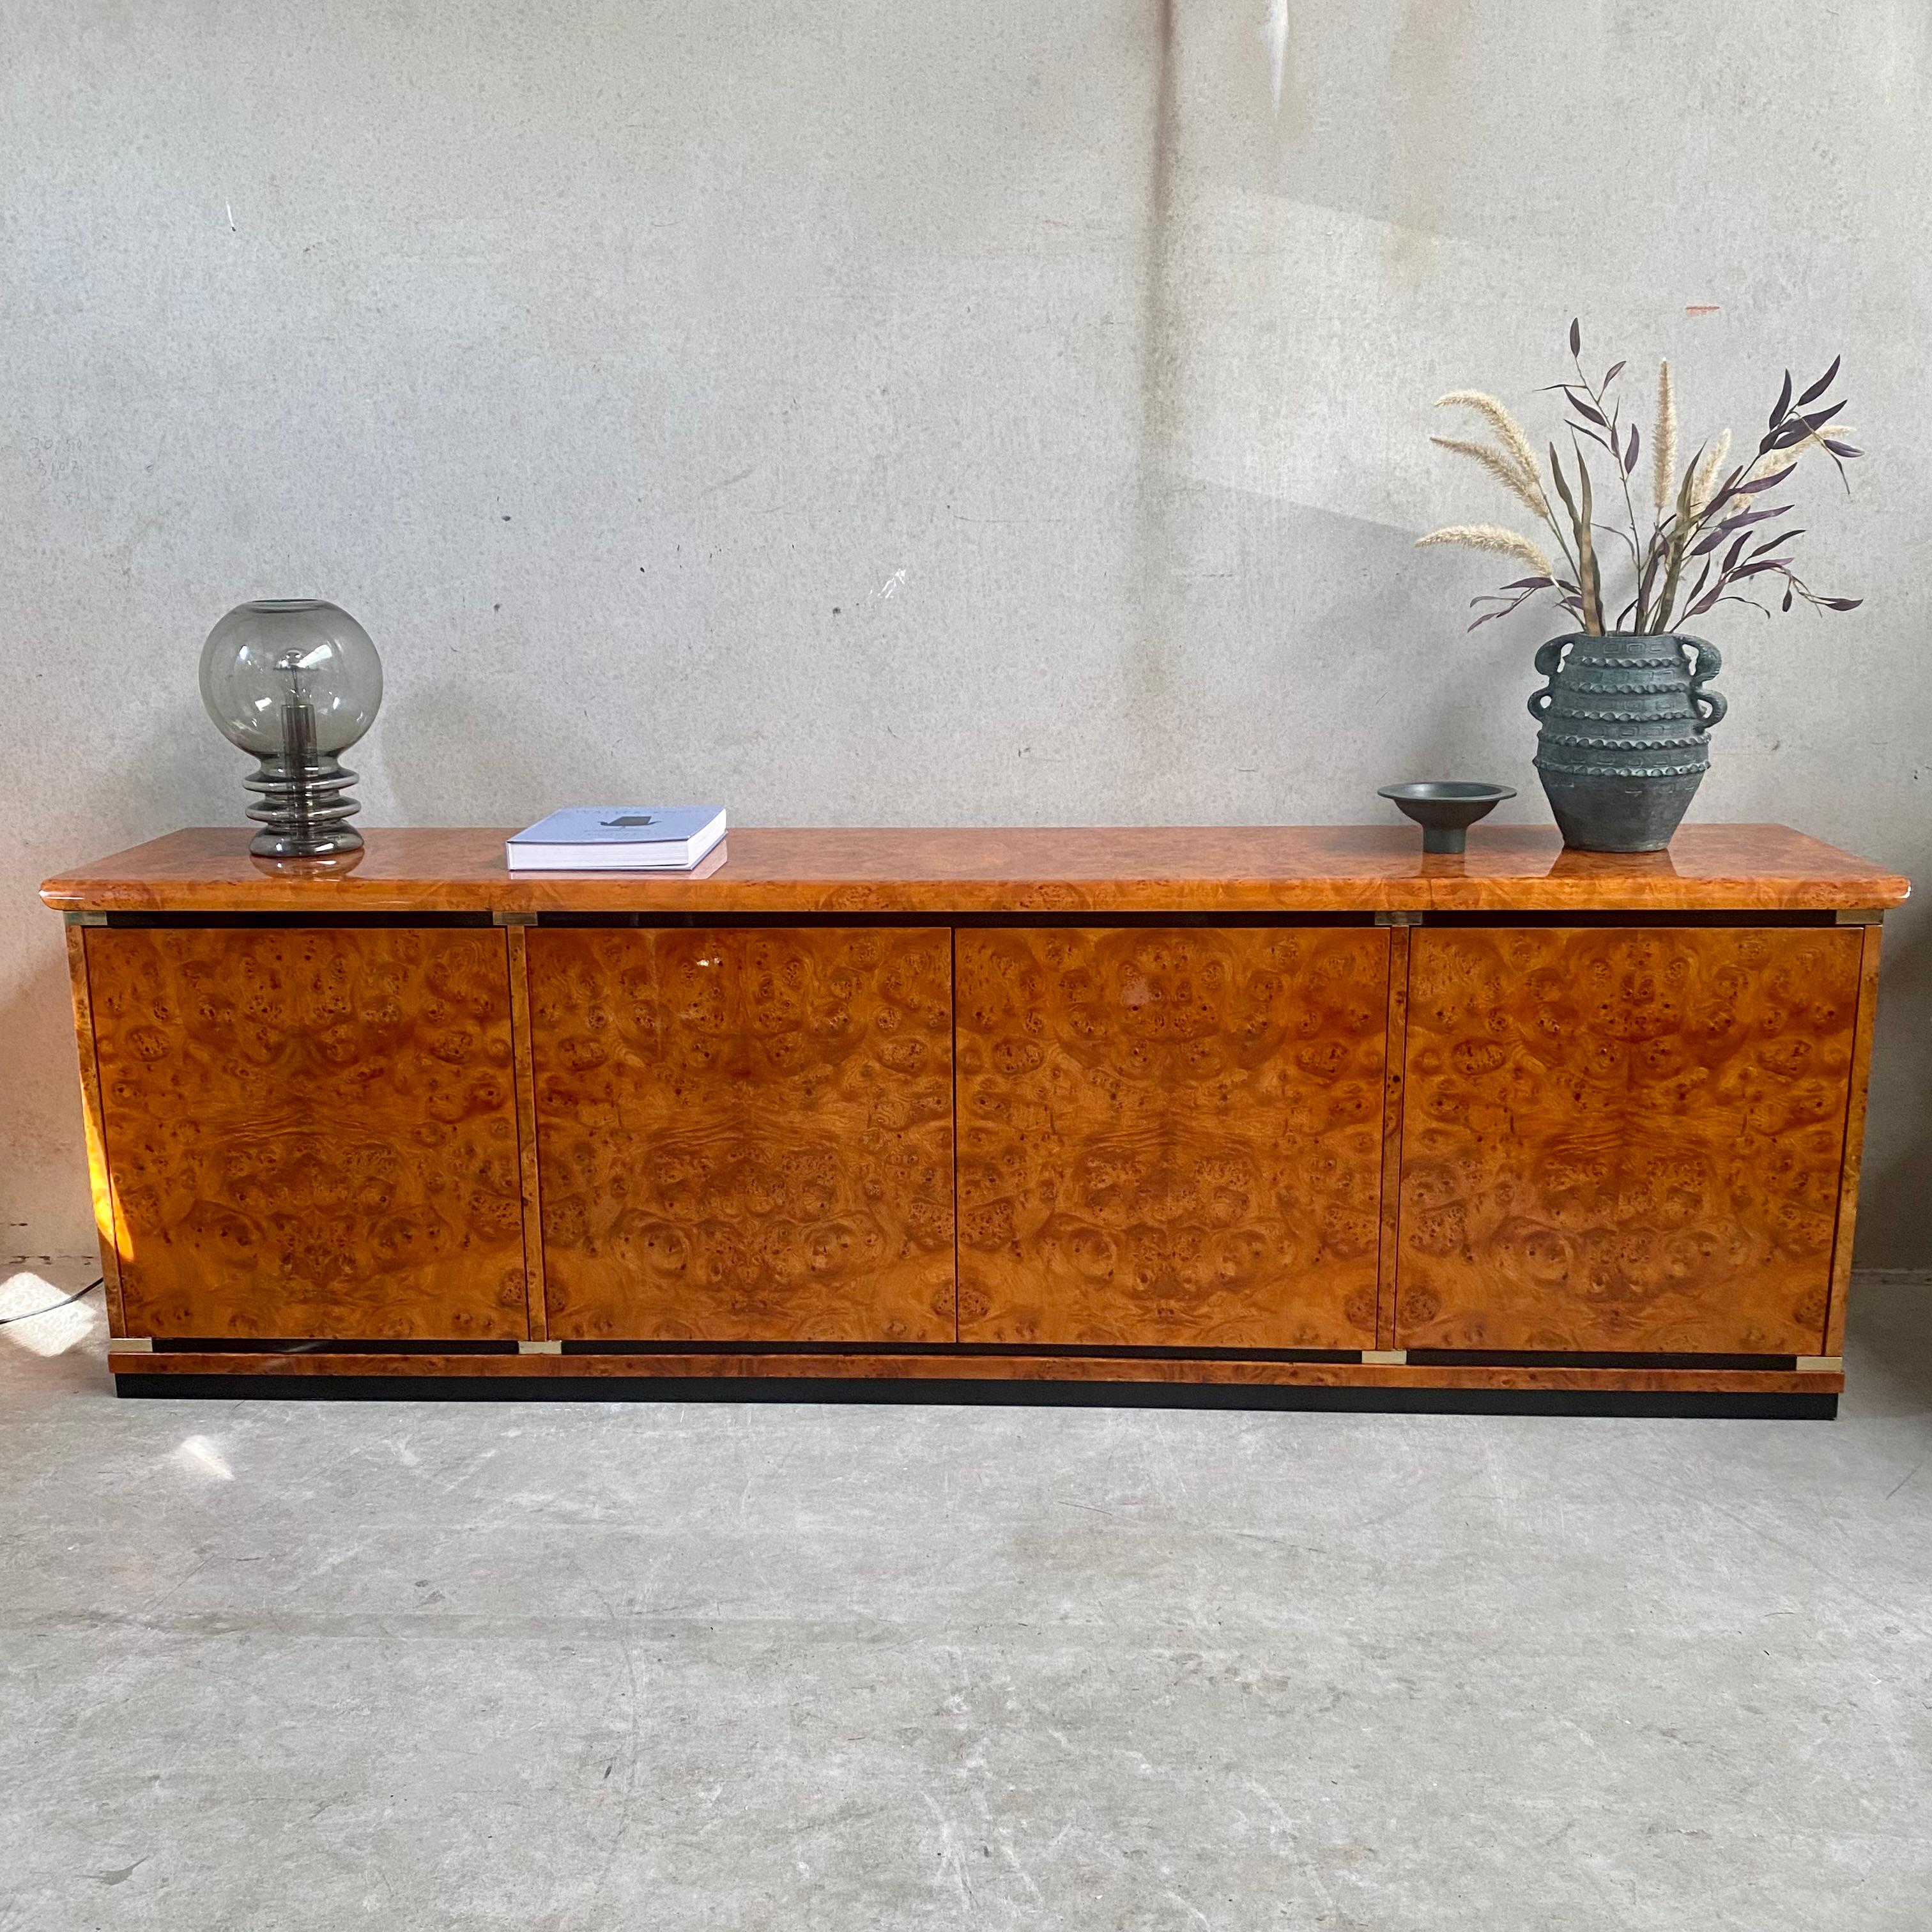 Die Anrichte aus Wurzelholz von Guerini Emilio - ein zeitloses Meisterwerk, das 1980 von Gdm Luxury Design Furniture in Italien sorgfältig hergestellt wurde. Dieses exquisite Sideboard ist der Inbegriff von Luxus und Eleganz und verleiht jeder